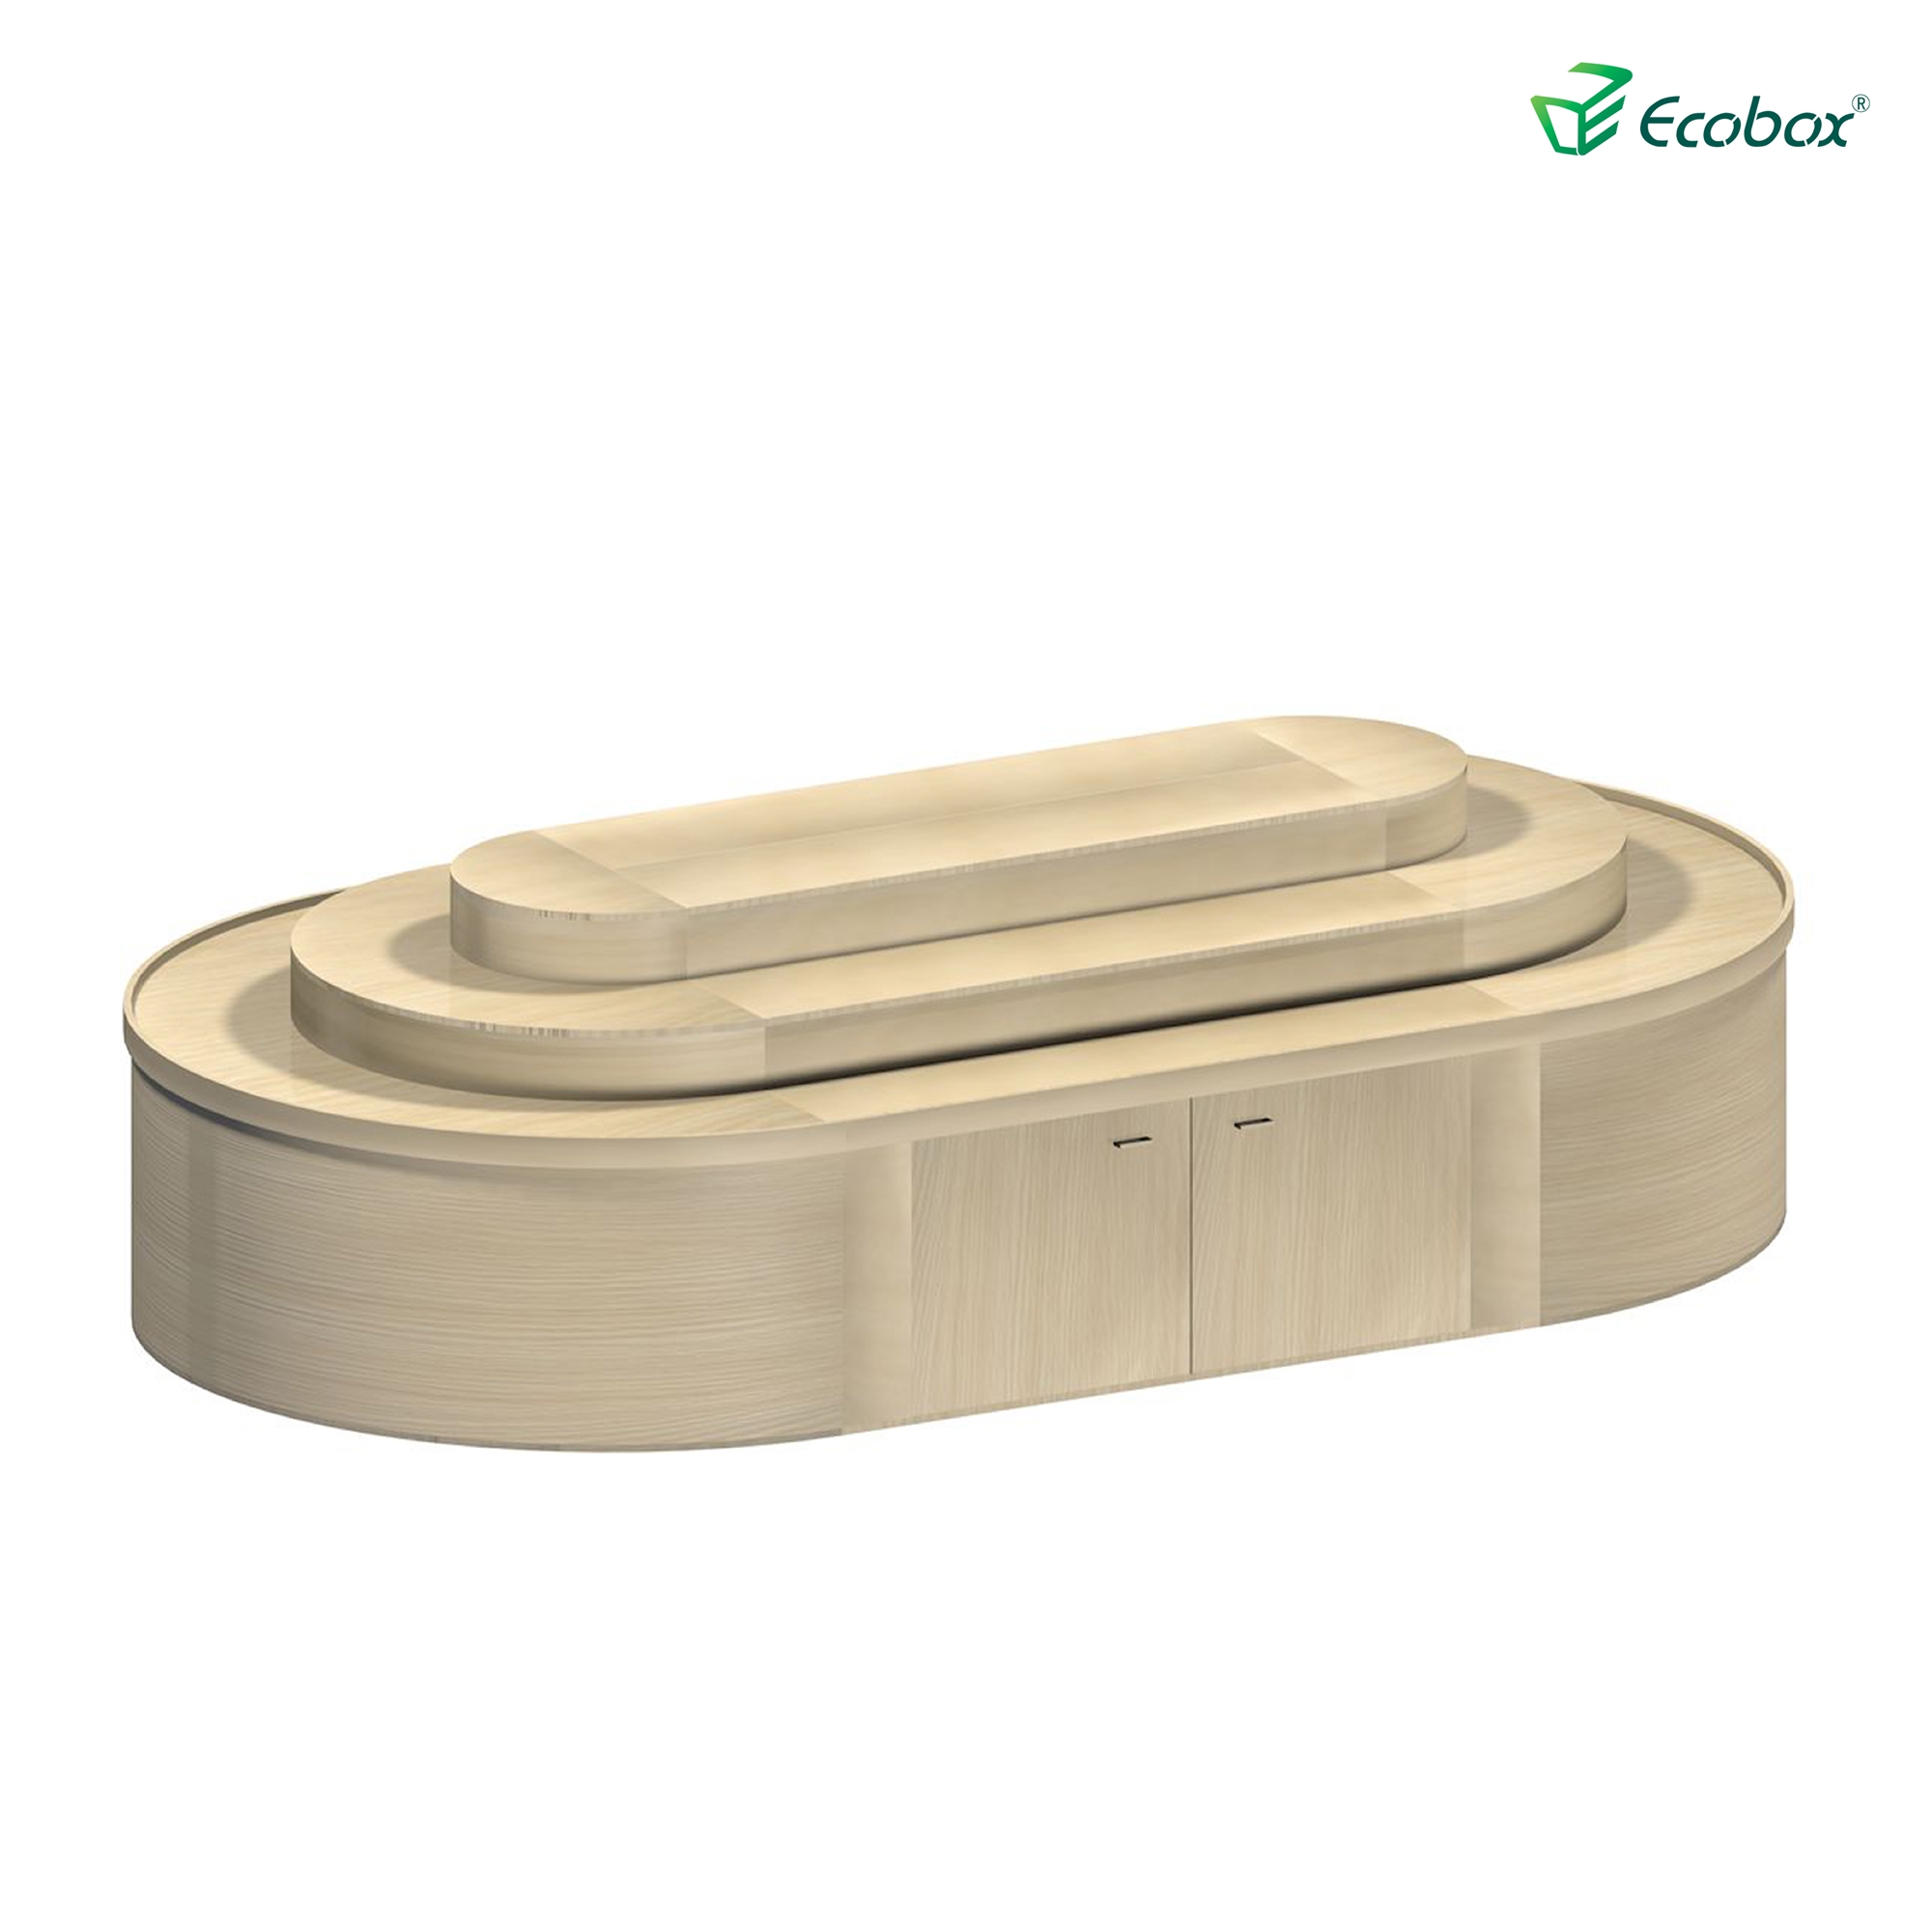 Ecobox G012 Supermarkt-Bulk-Lebensmittel Zeigt Runde Regal Candy Nuts Regal mit luftdichtem Behälter